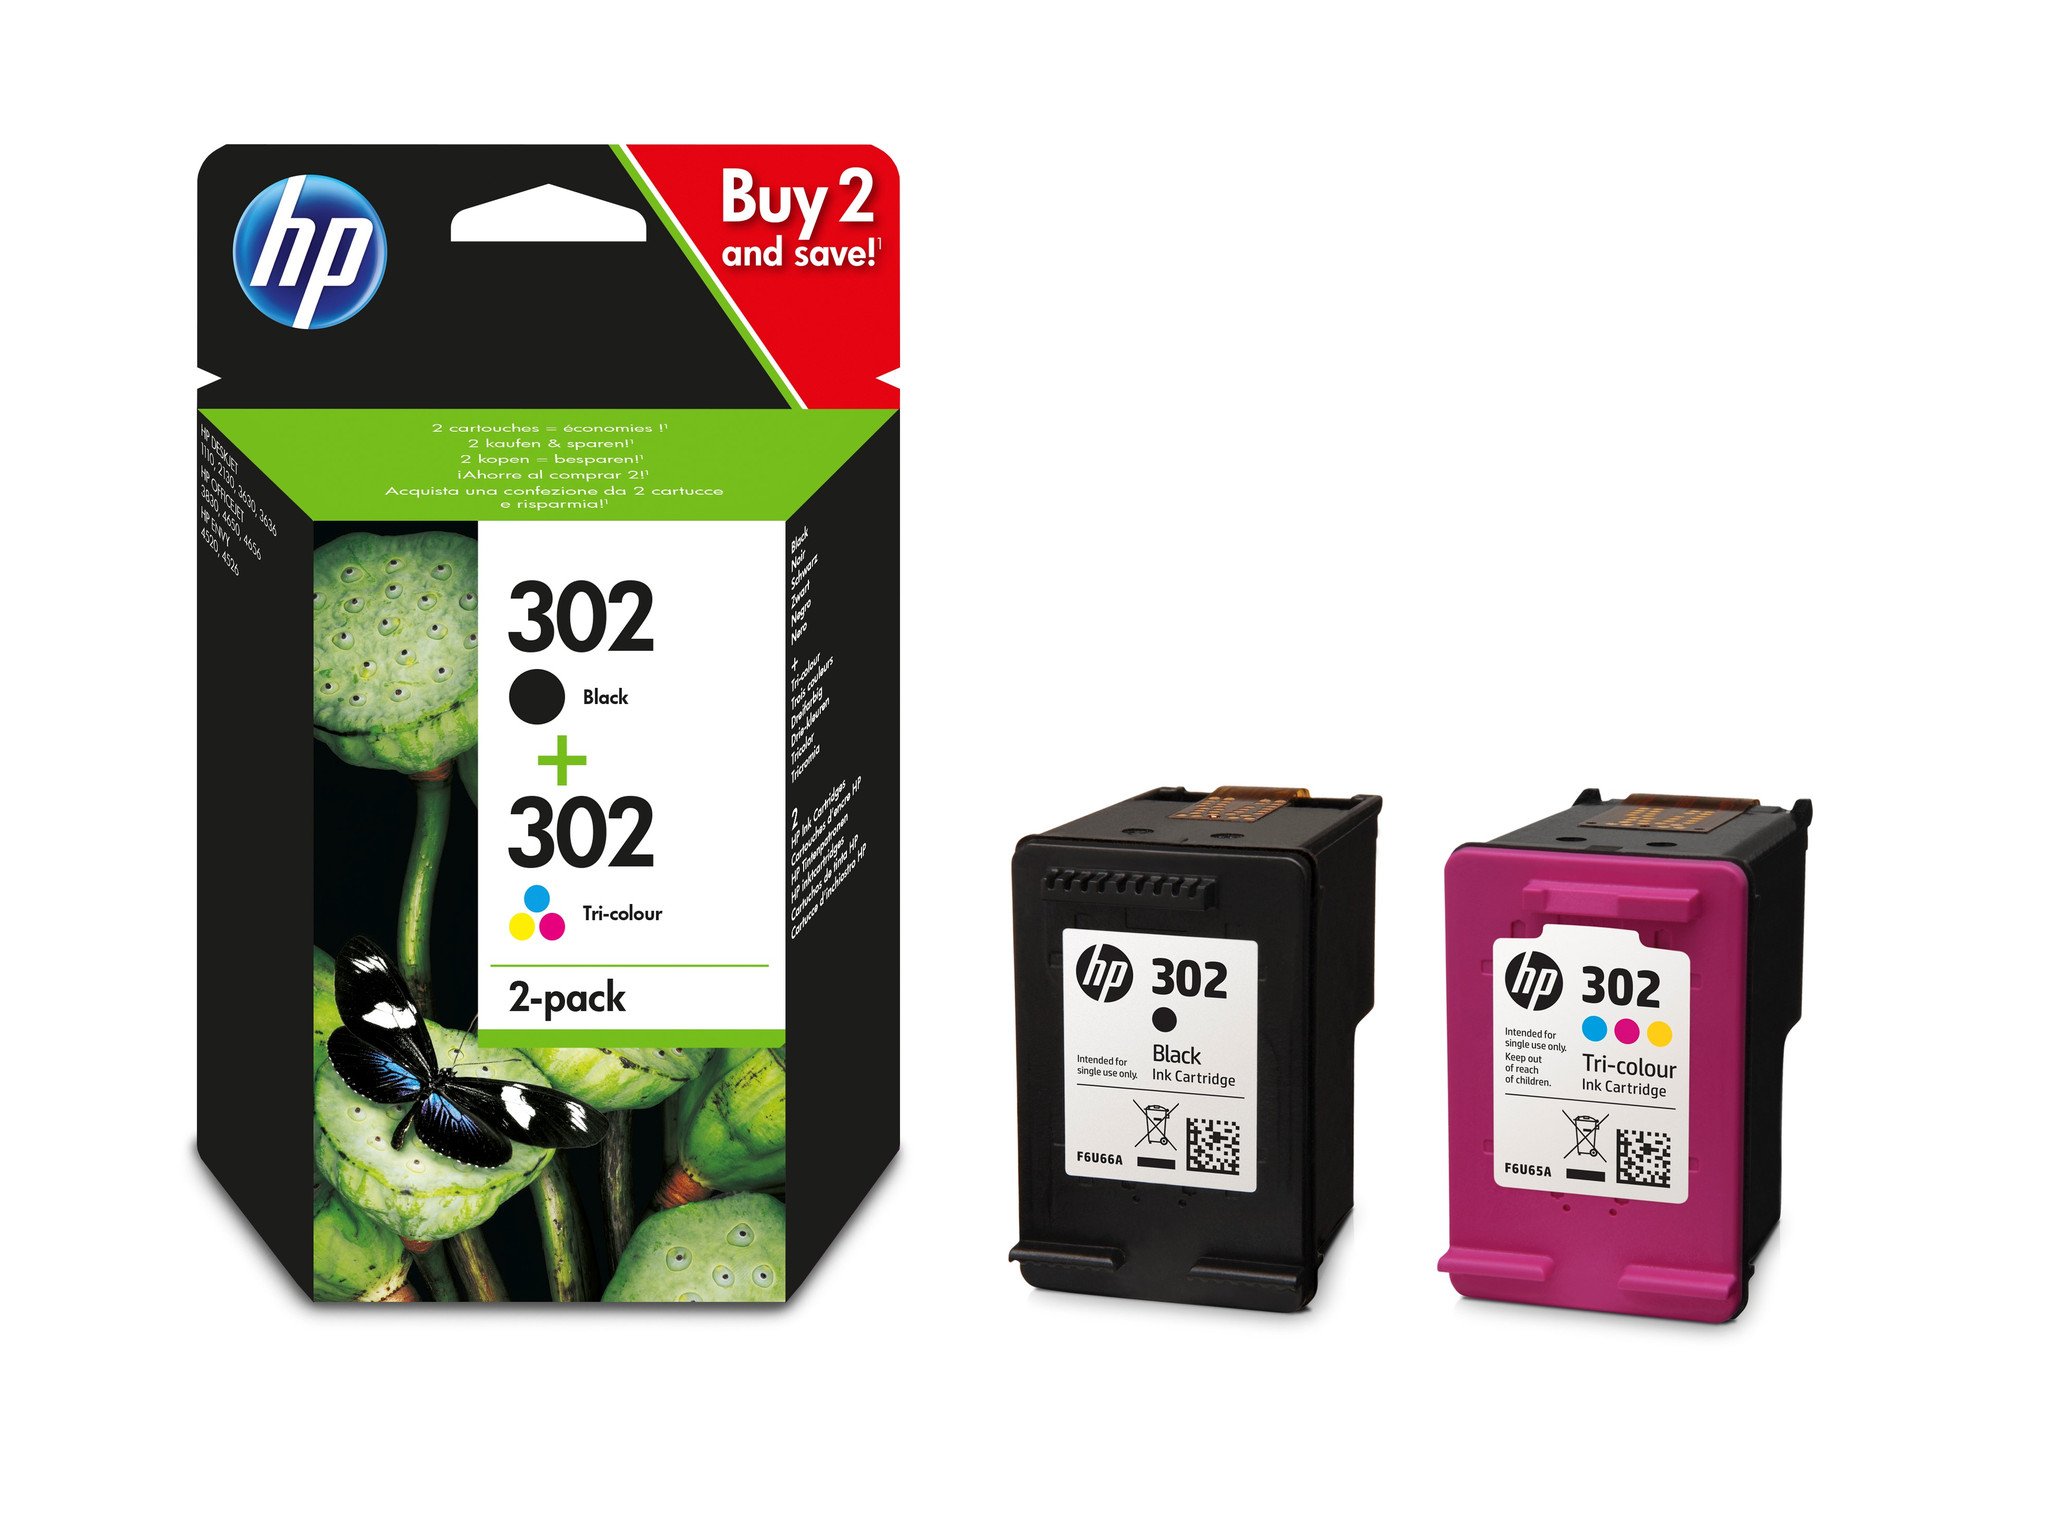 Maxi kit pro para Hp recarga cartuchos tinta negro y color Logar